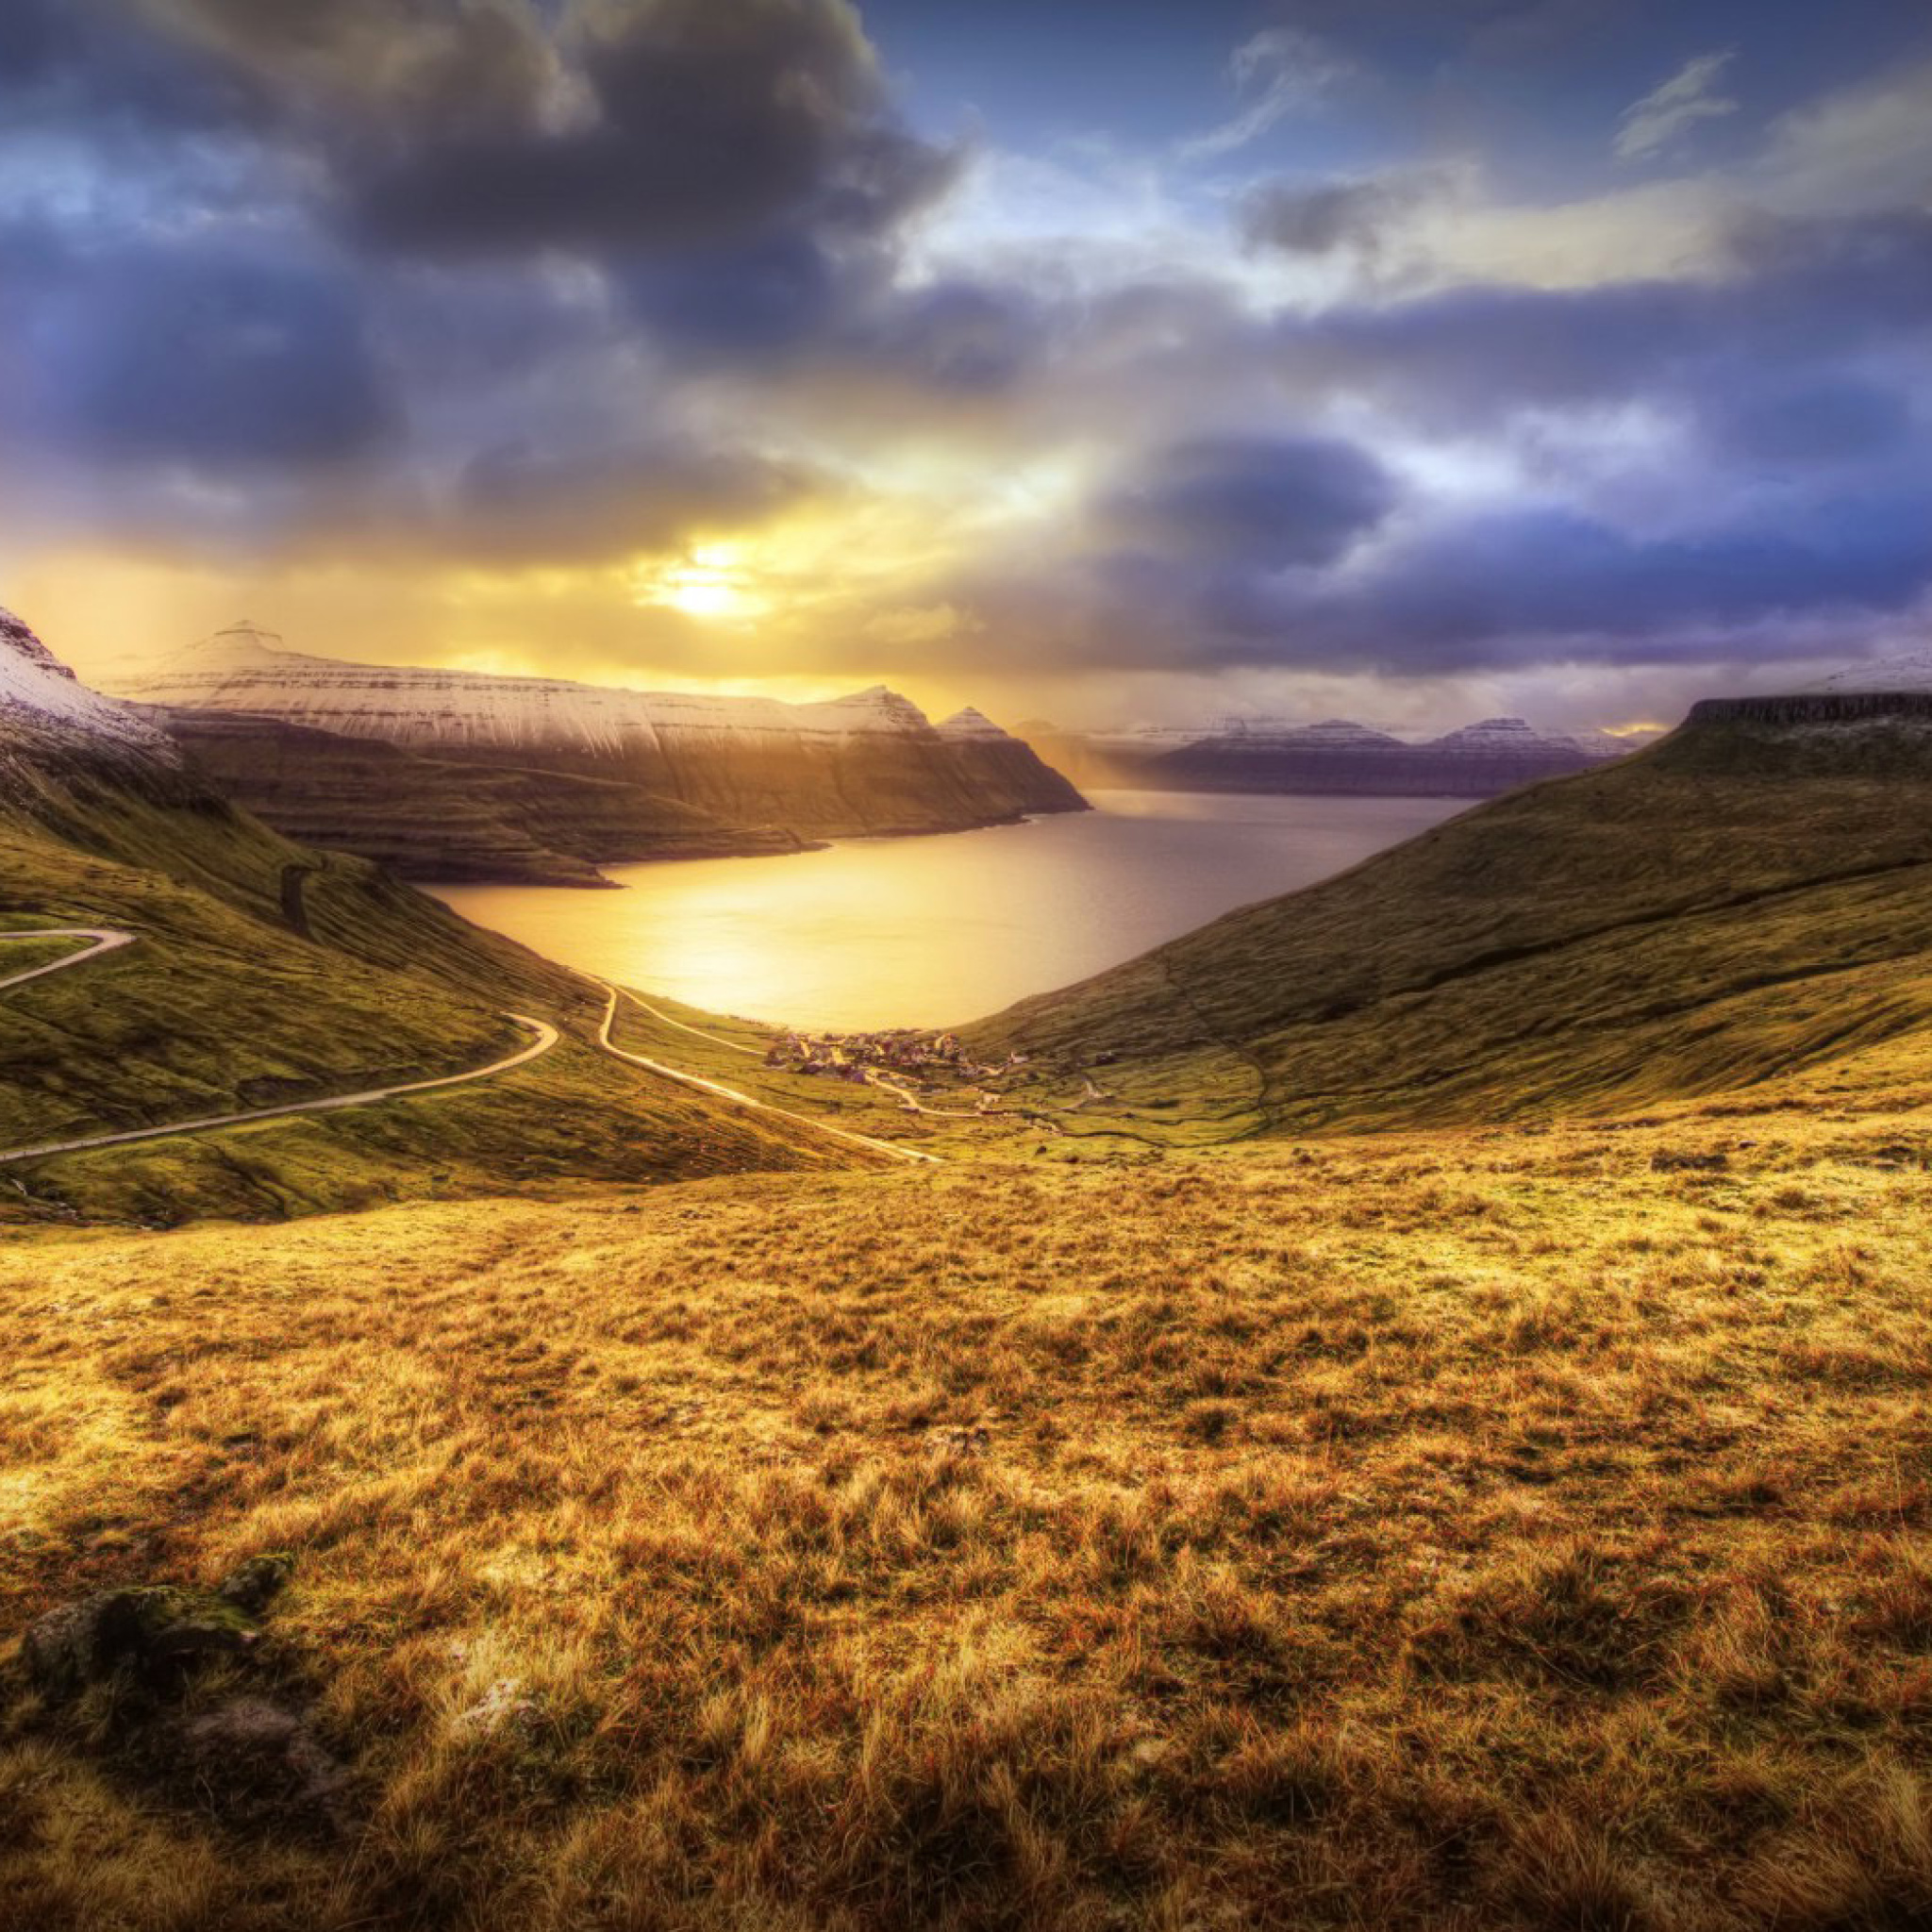 Sfondi Faroe Islands Landscape 2048x2048